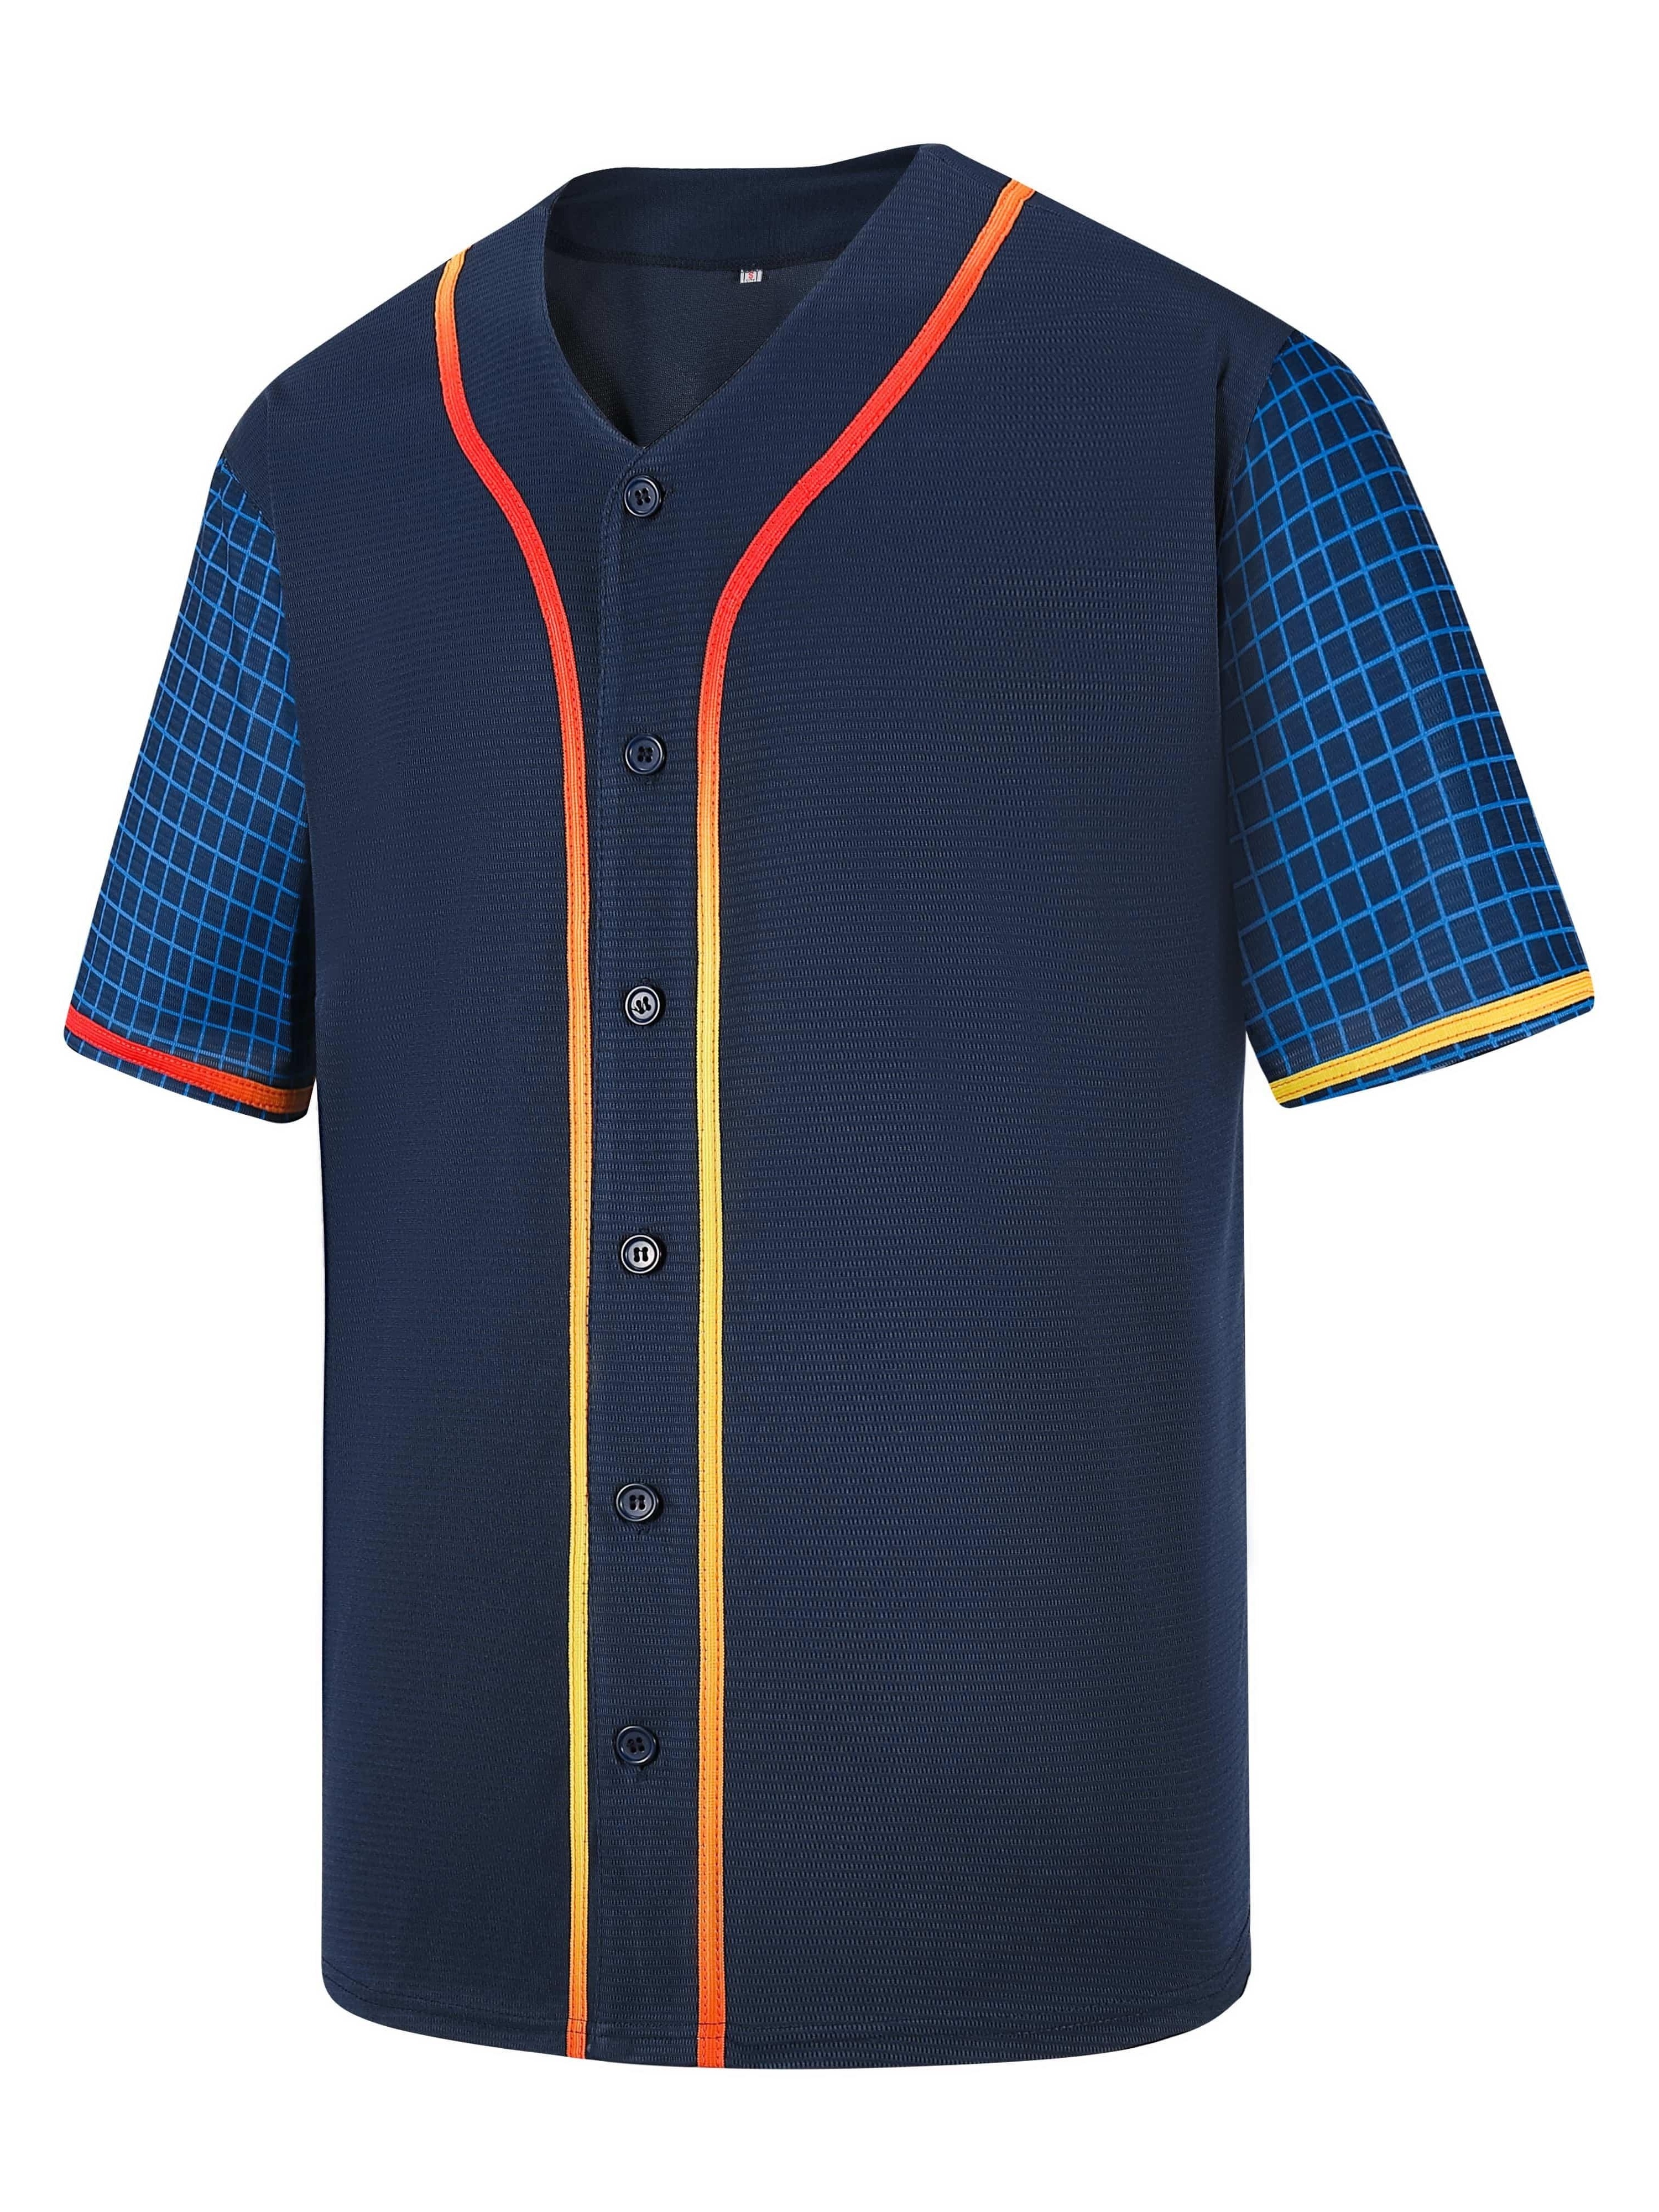 Mens Baseball Jersey MLB Plain T Shirt Team Uniform Solid Button Tee SIZE:  S-3XL